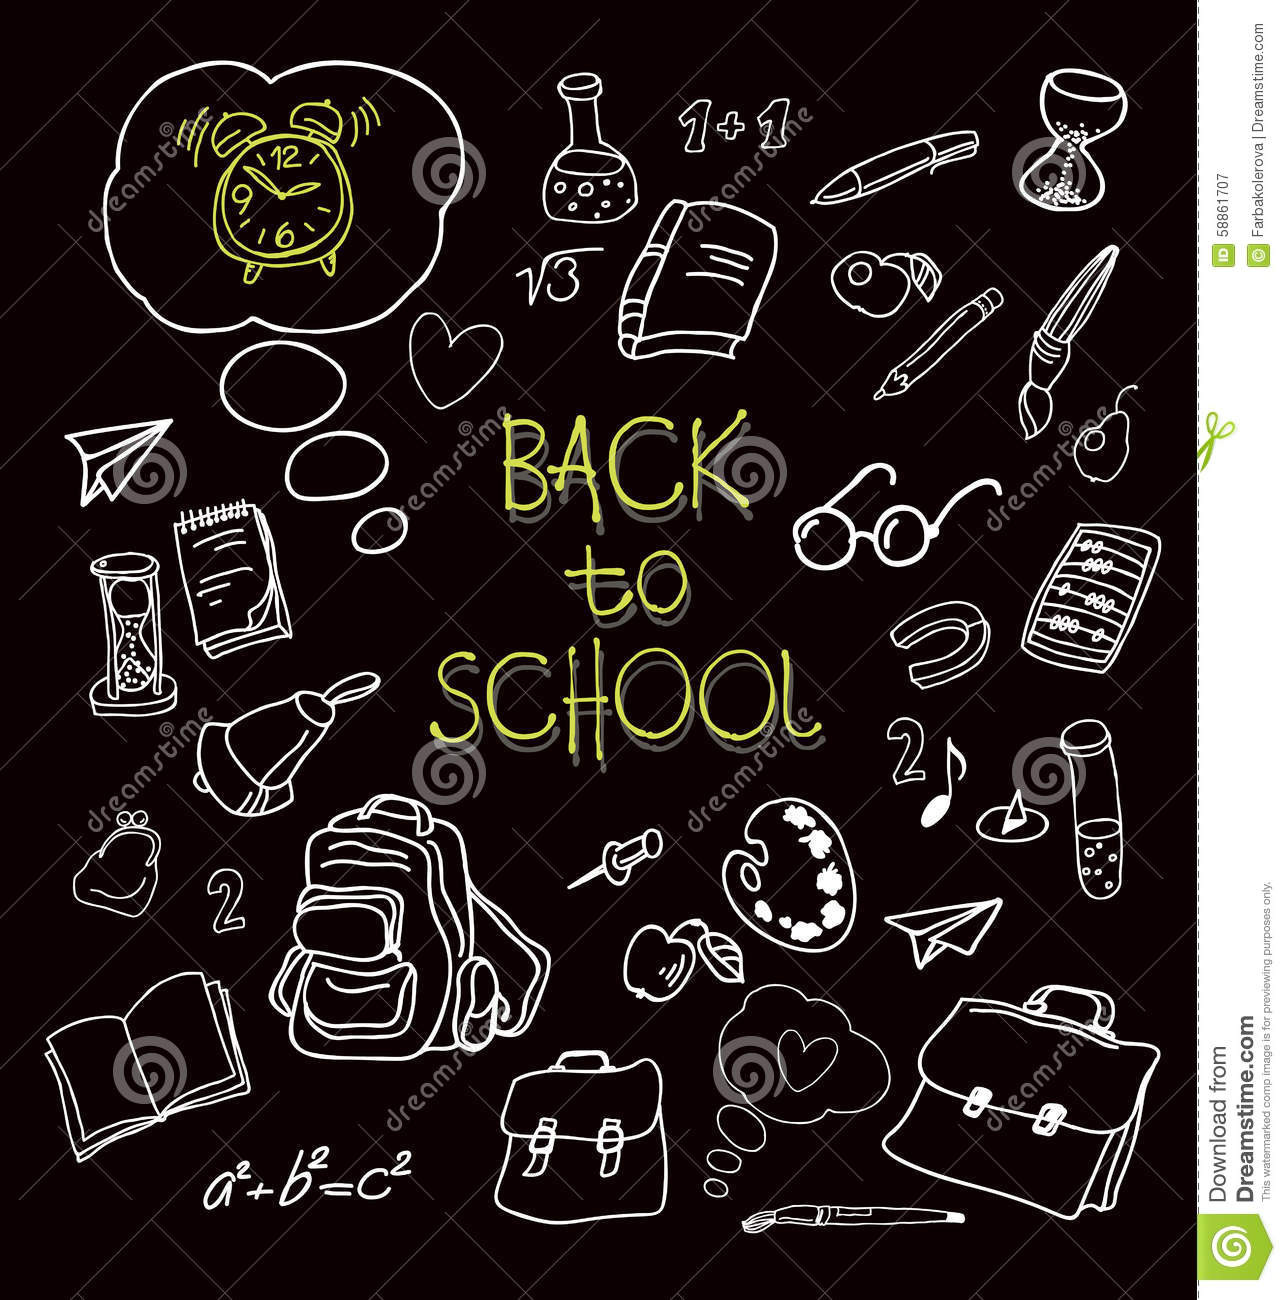 Back To School Chalkboard
 Back To School Doodles In Chalkboard Background Stock